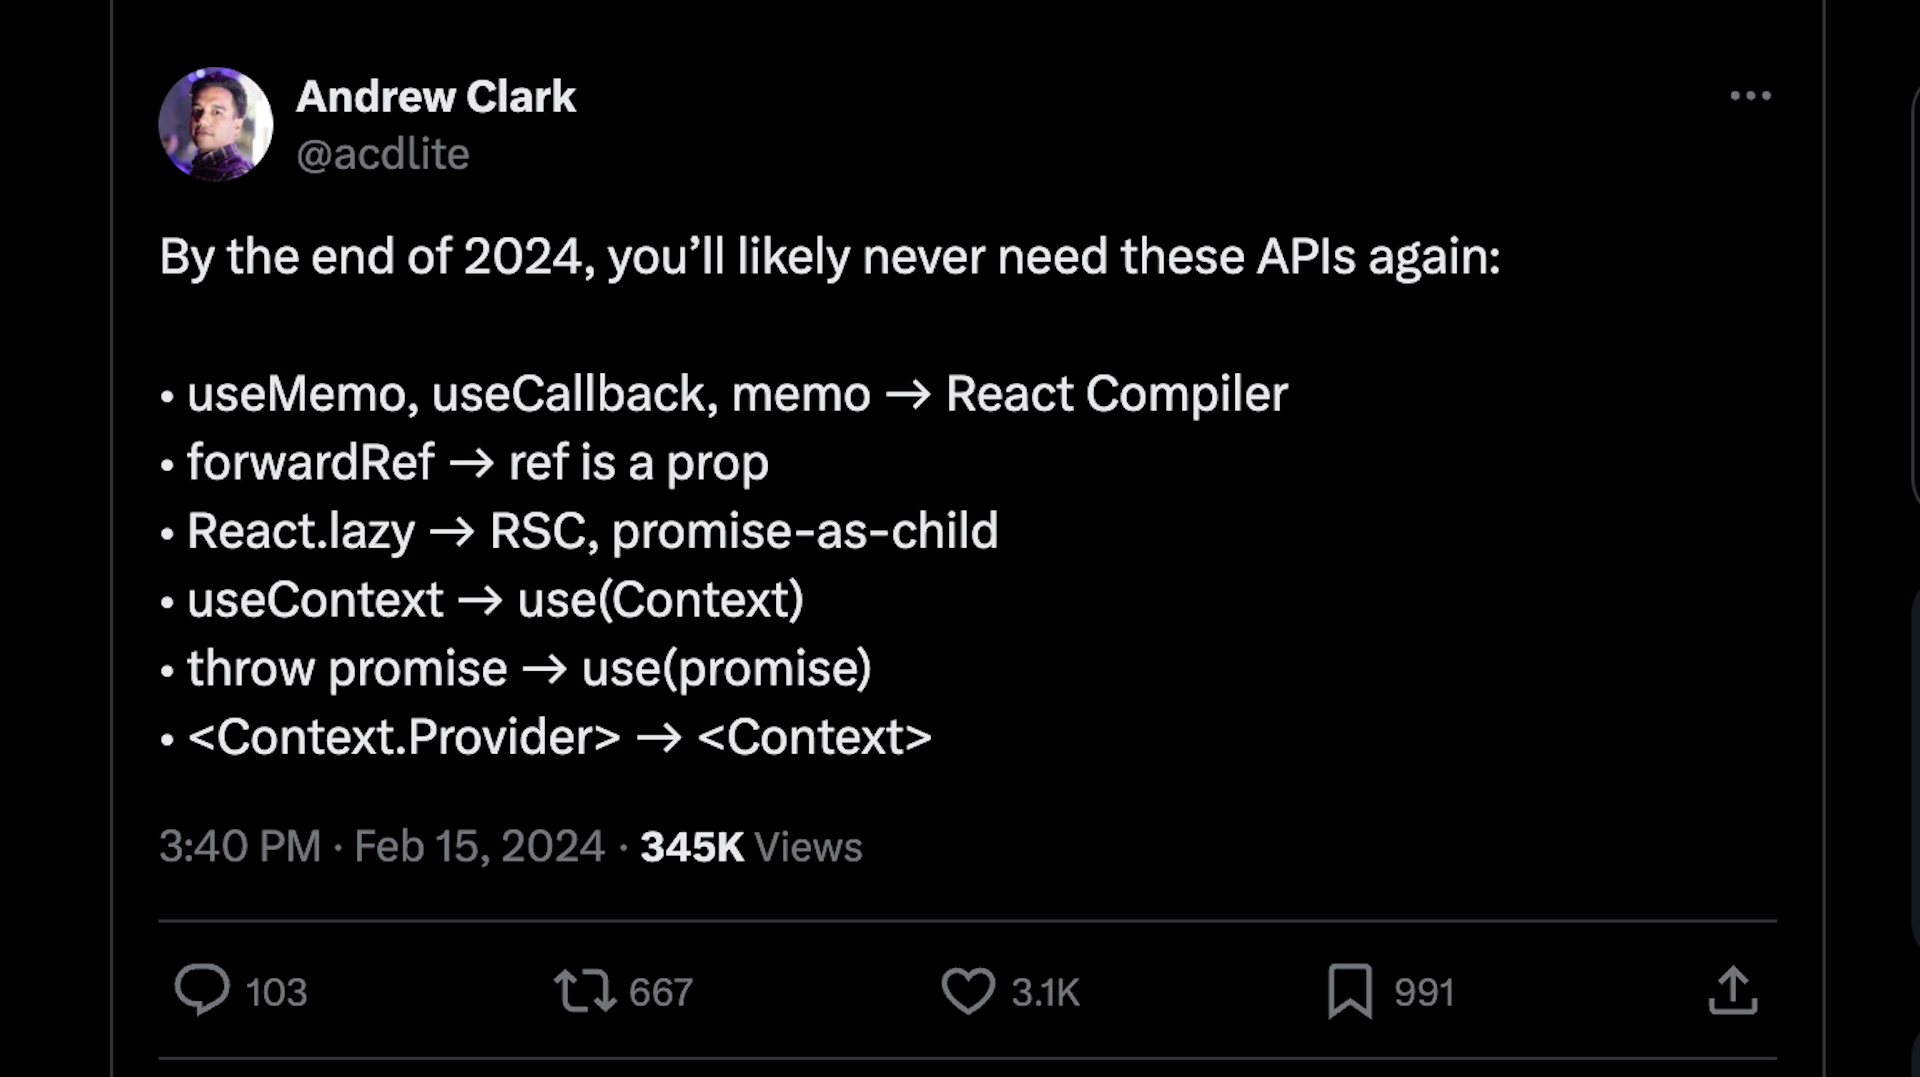 Andrew clark tweet on upcoming ReactJS19 new features